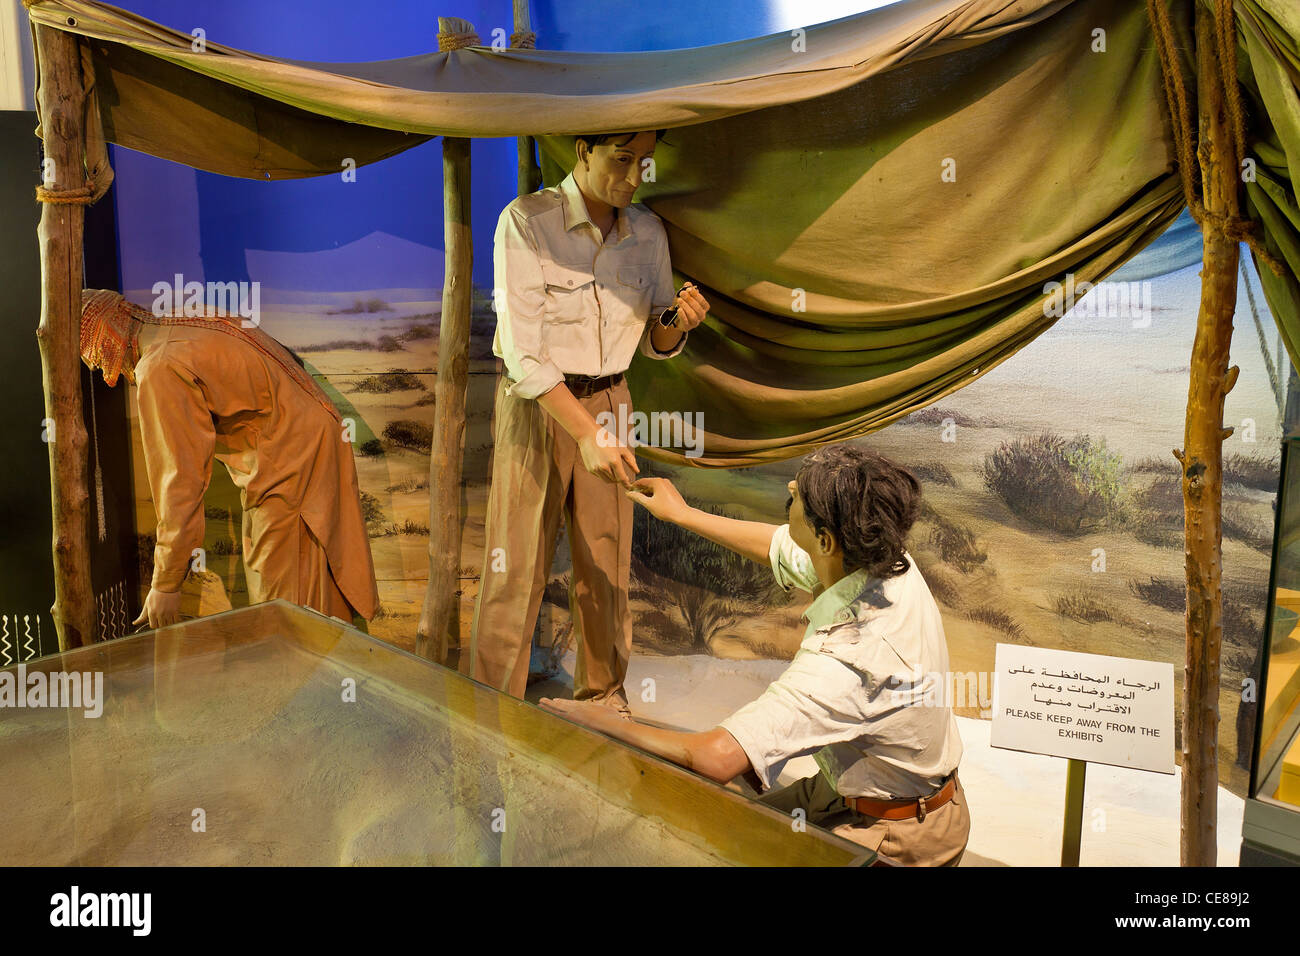 Dubaï, la section archéologie du musée de Dubaï Banque D'Images